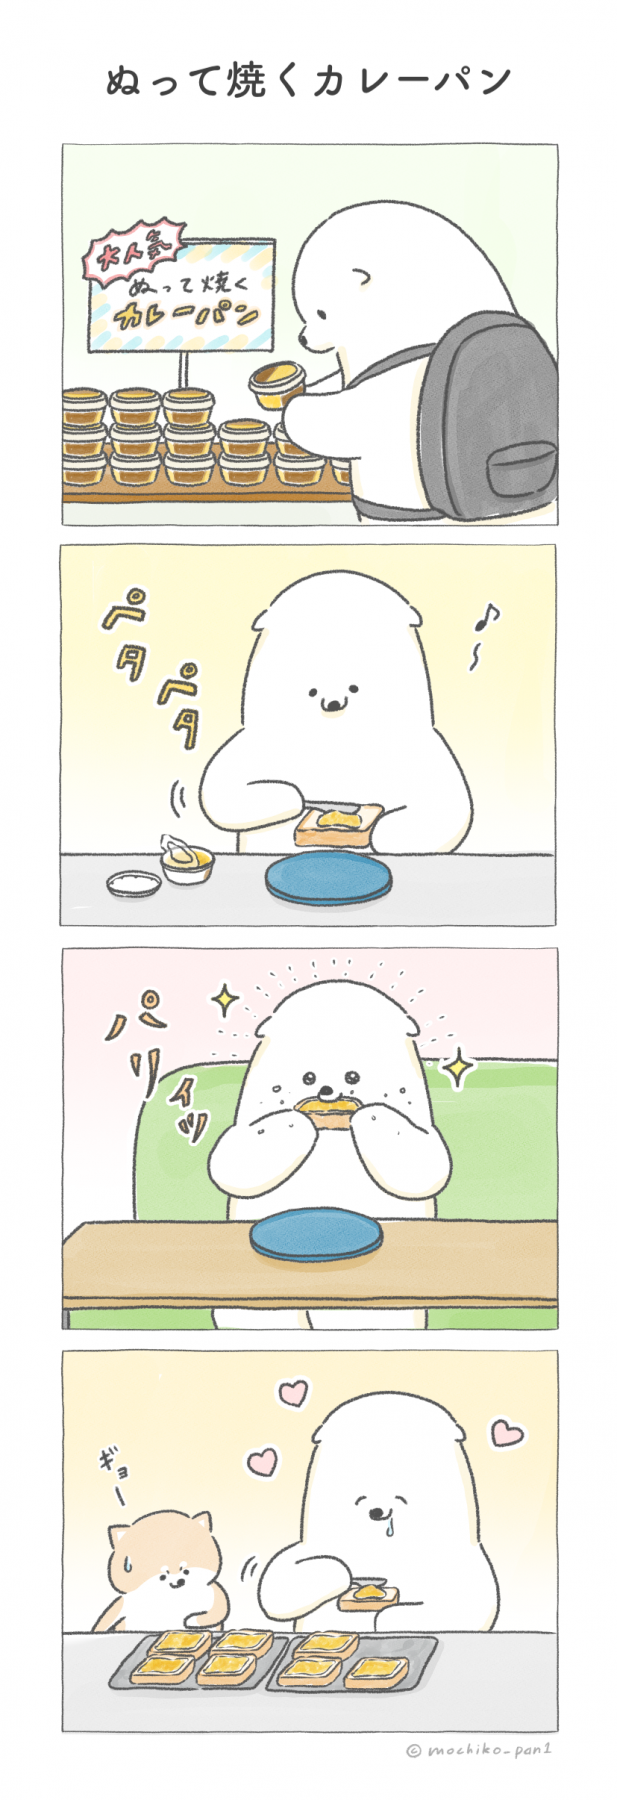 イラスト四コマ漫画「クマシローの朝食づくり」